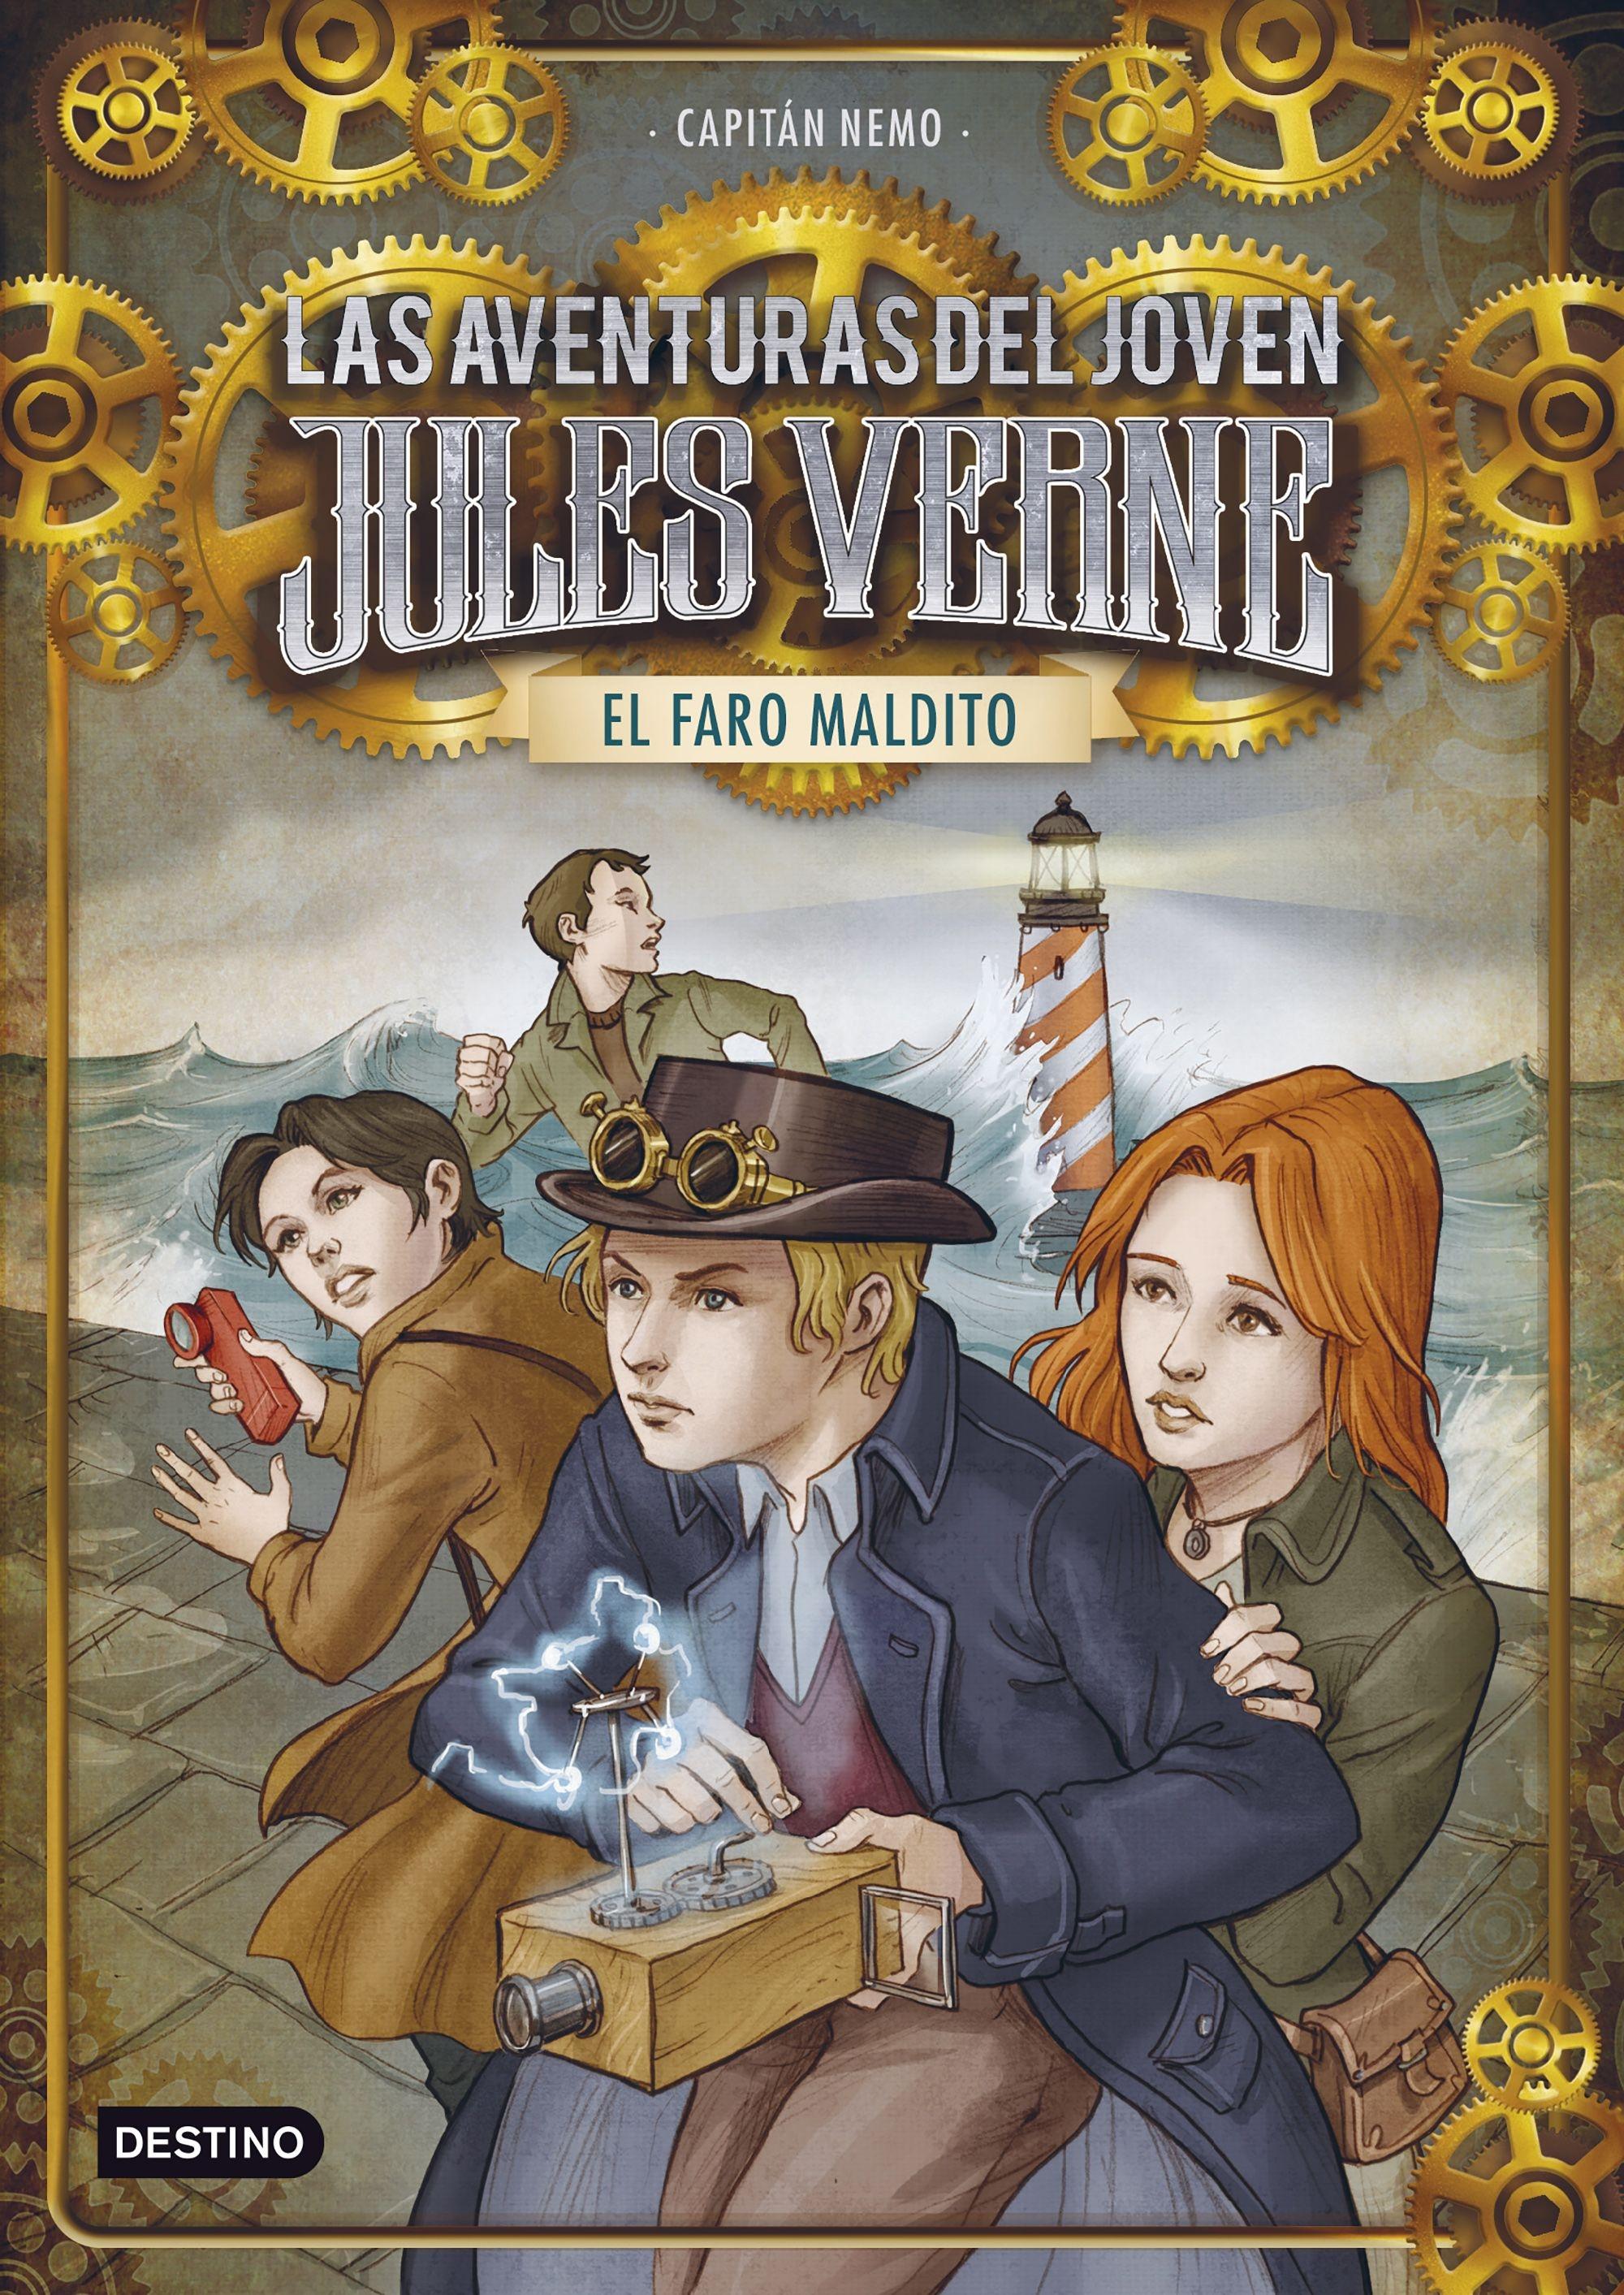 El Faro Maldito "Las Aventuras del Joven Jules Verne 2". 